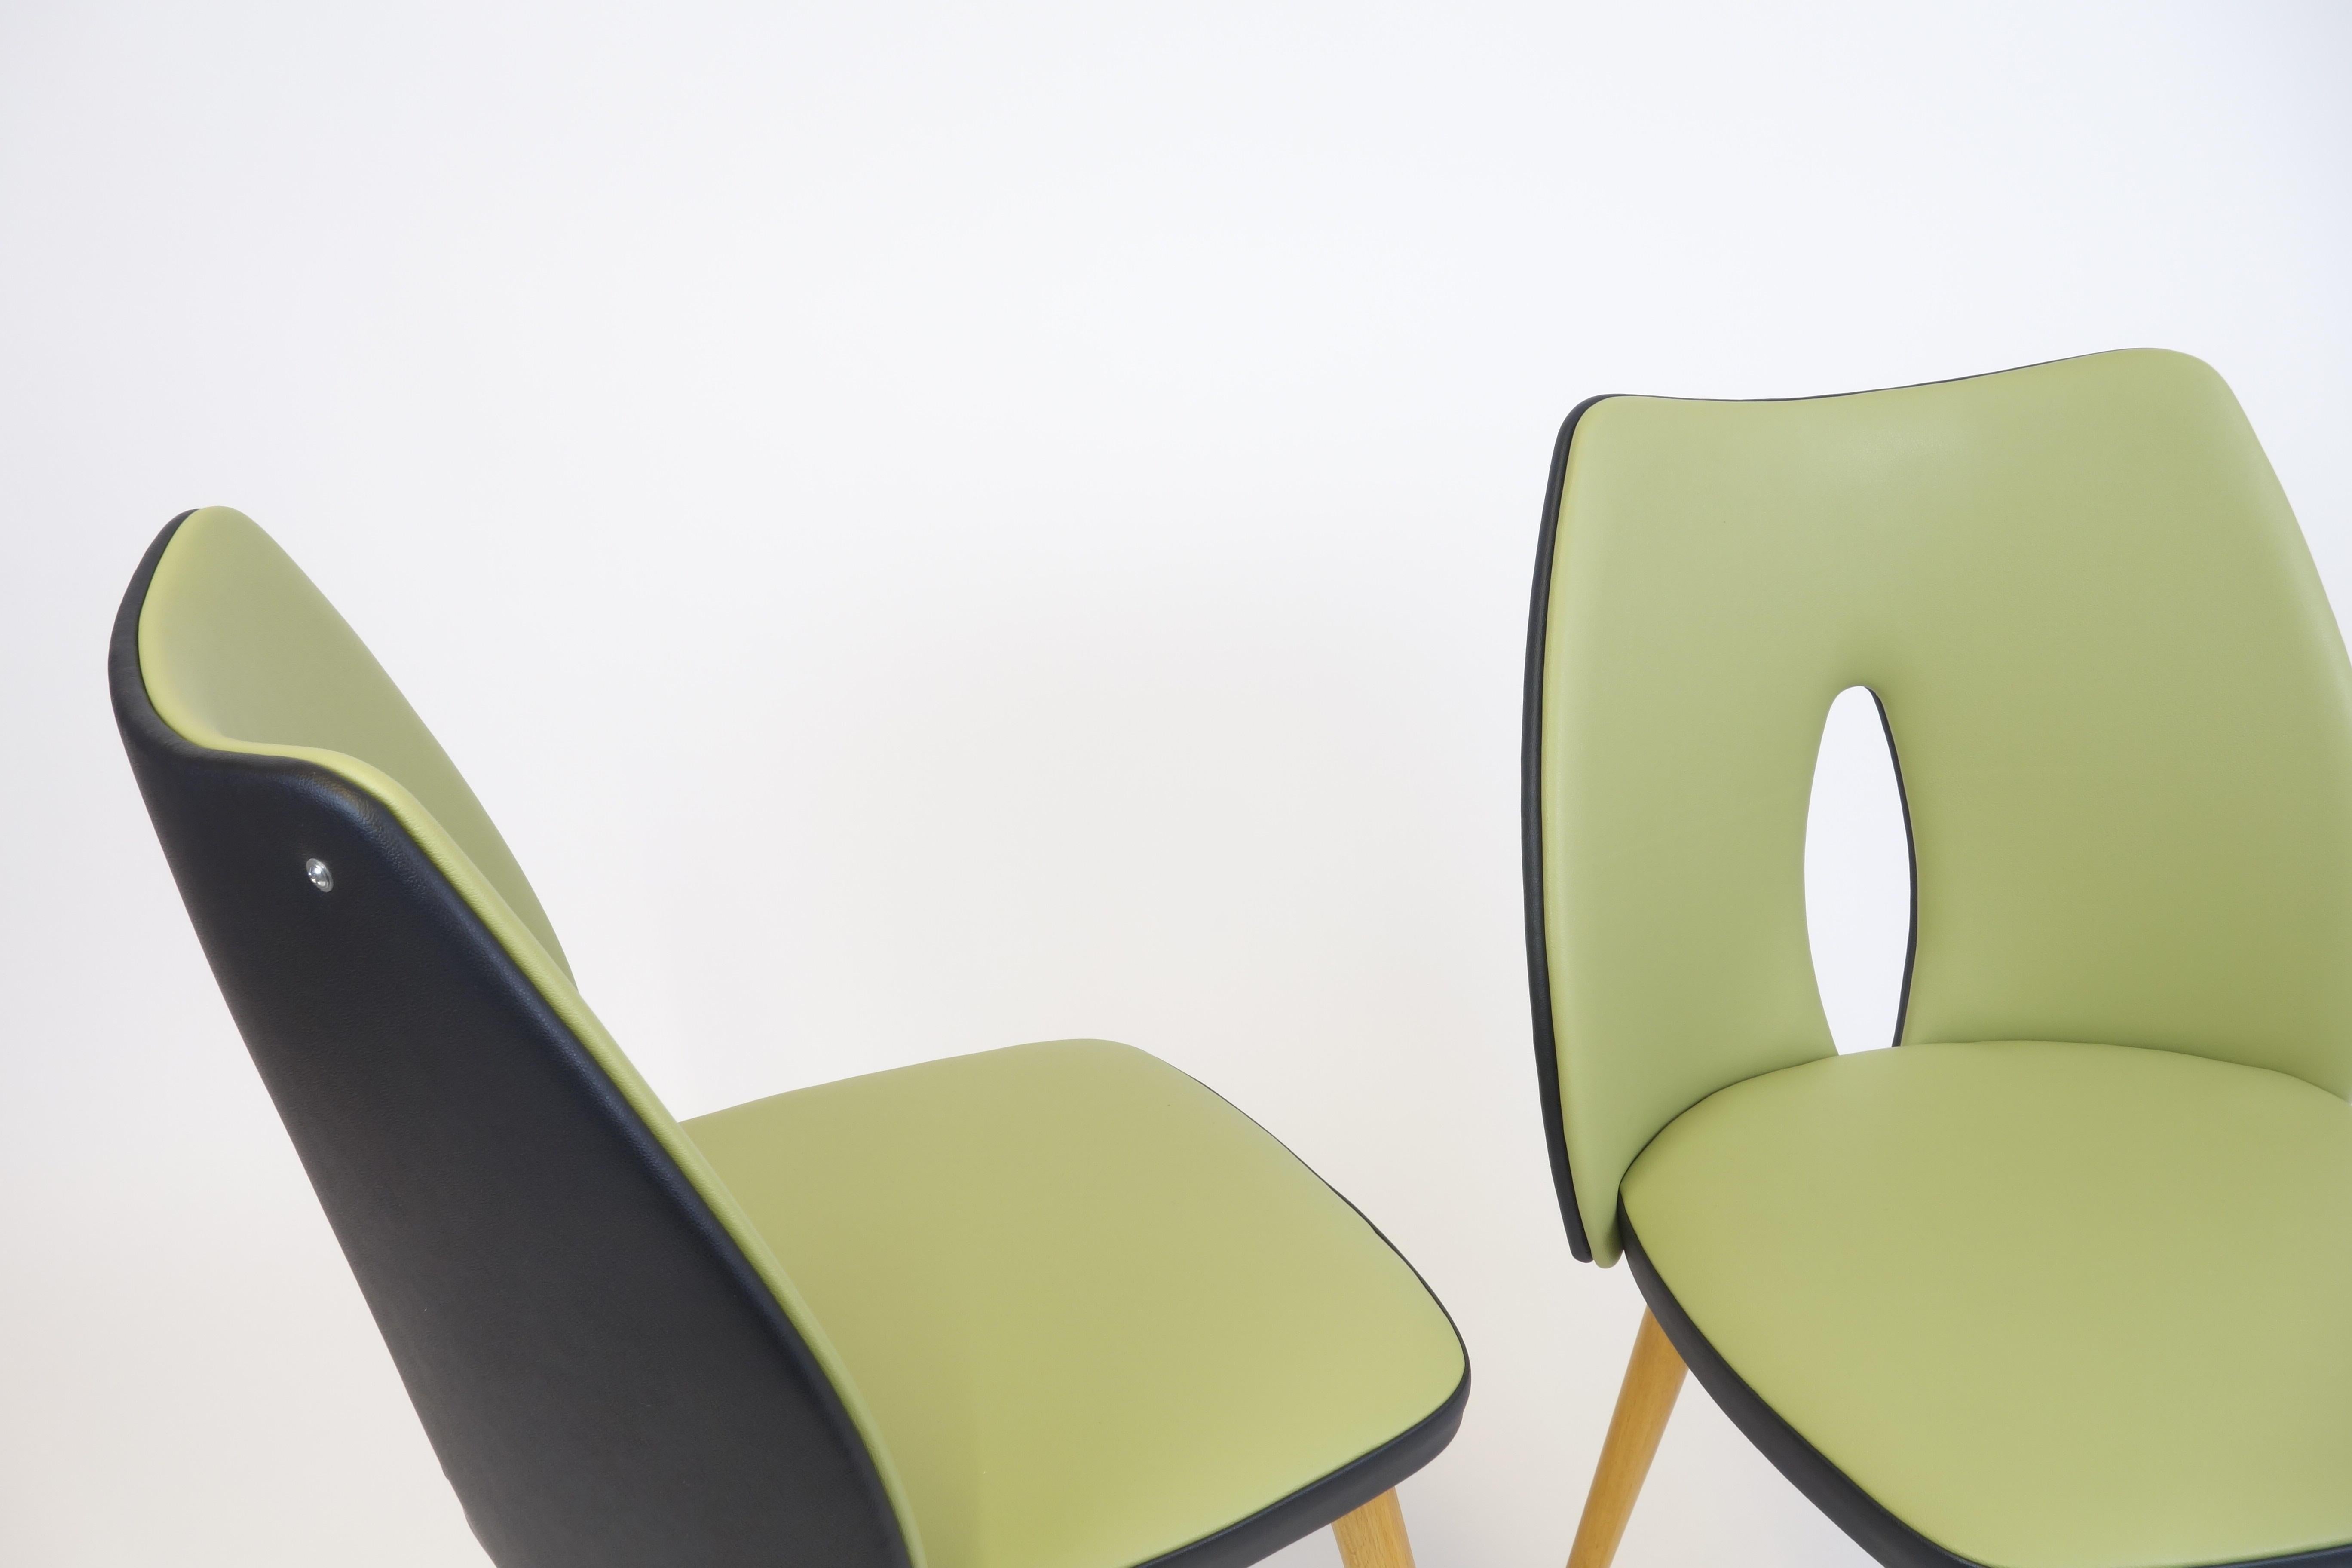 Zwei kantige Stühle von P.M.P., hergestellt in Wien, um 1956. Diese Objekte sind mit Massivholzrahmen ausgestattet, die mit Lindenholzbeinen versehen sind und einen extravaganten Dialog zwischen Sitz und Rückenlehne ermöglichen. Die Beine wurden